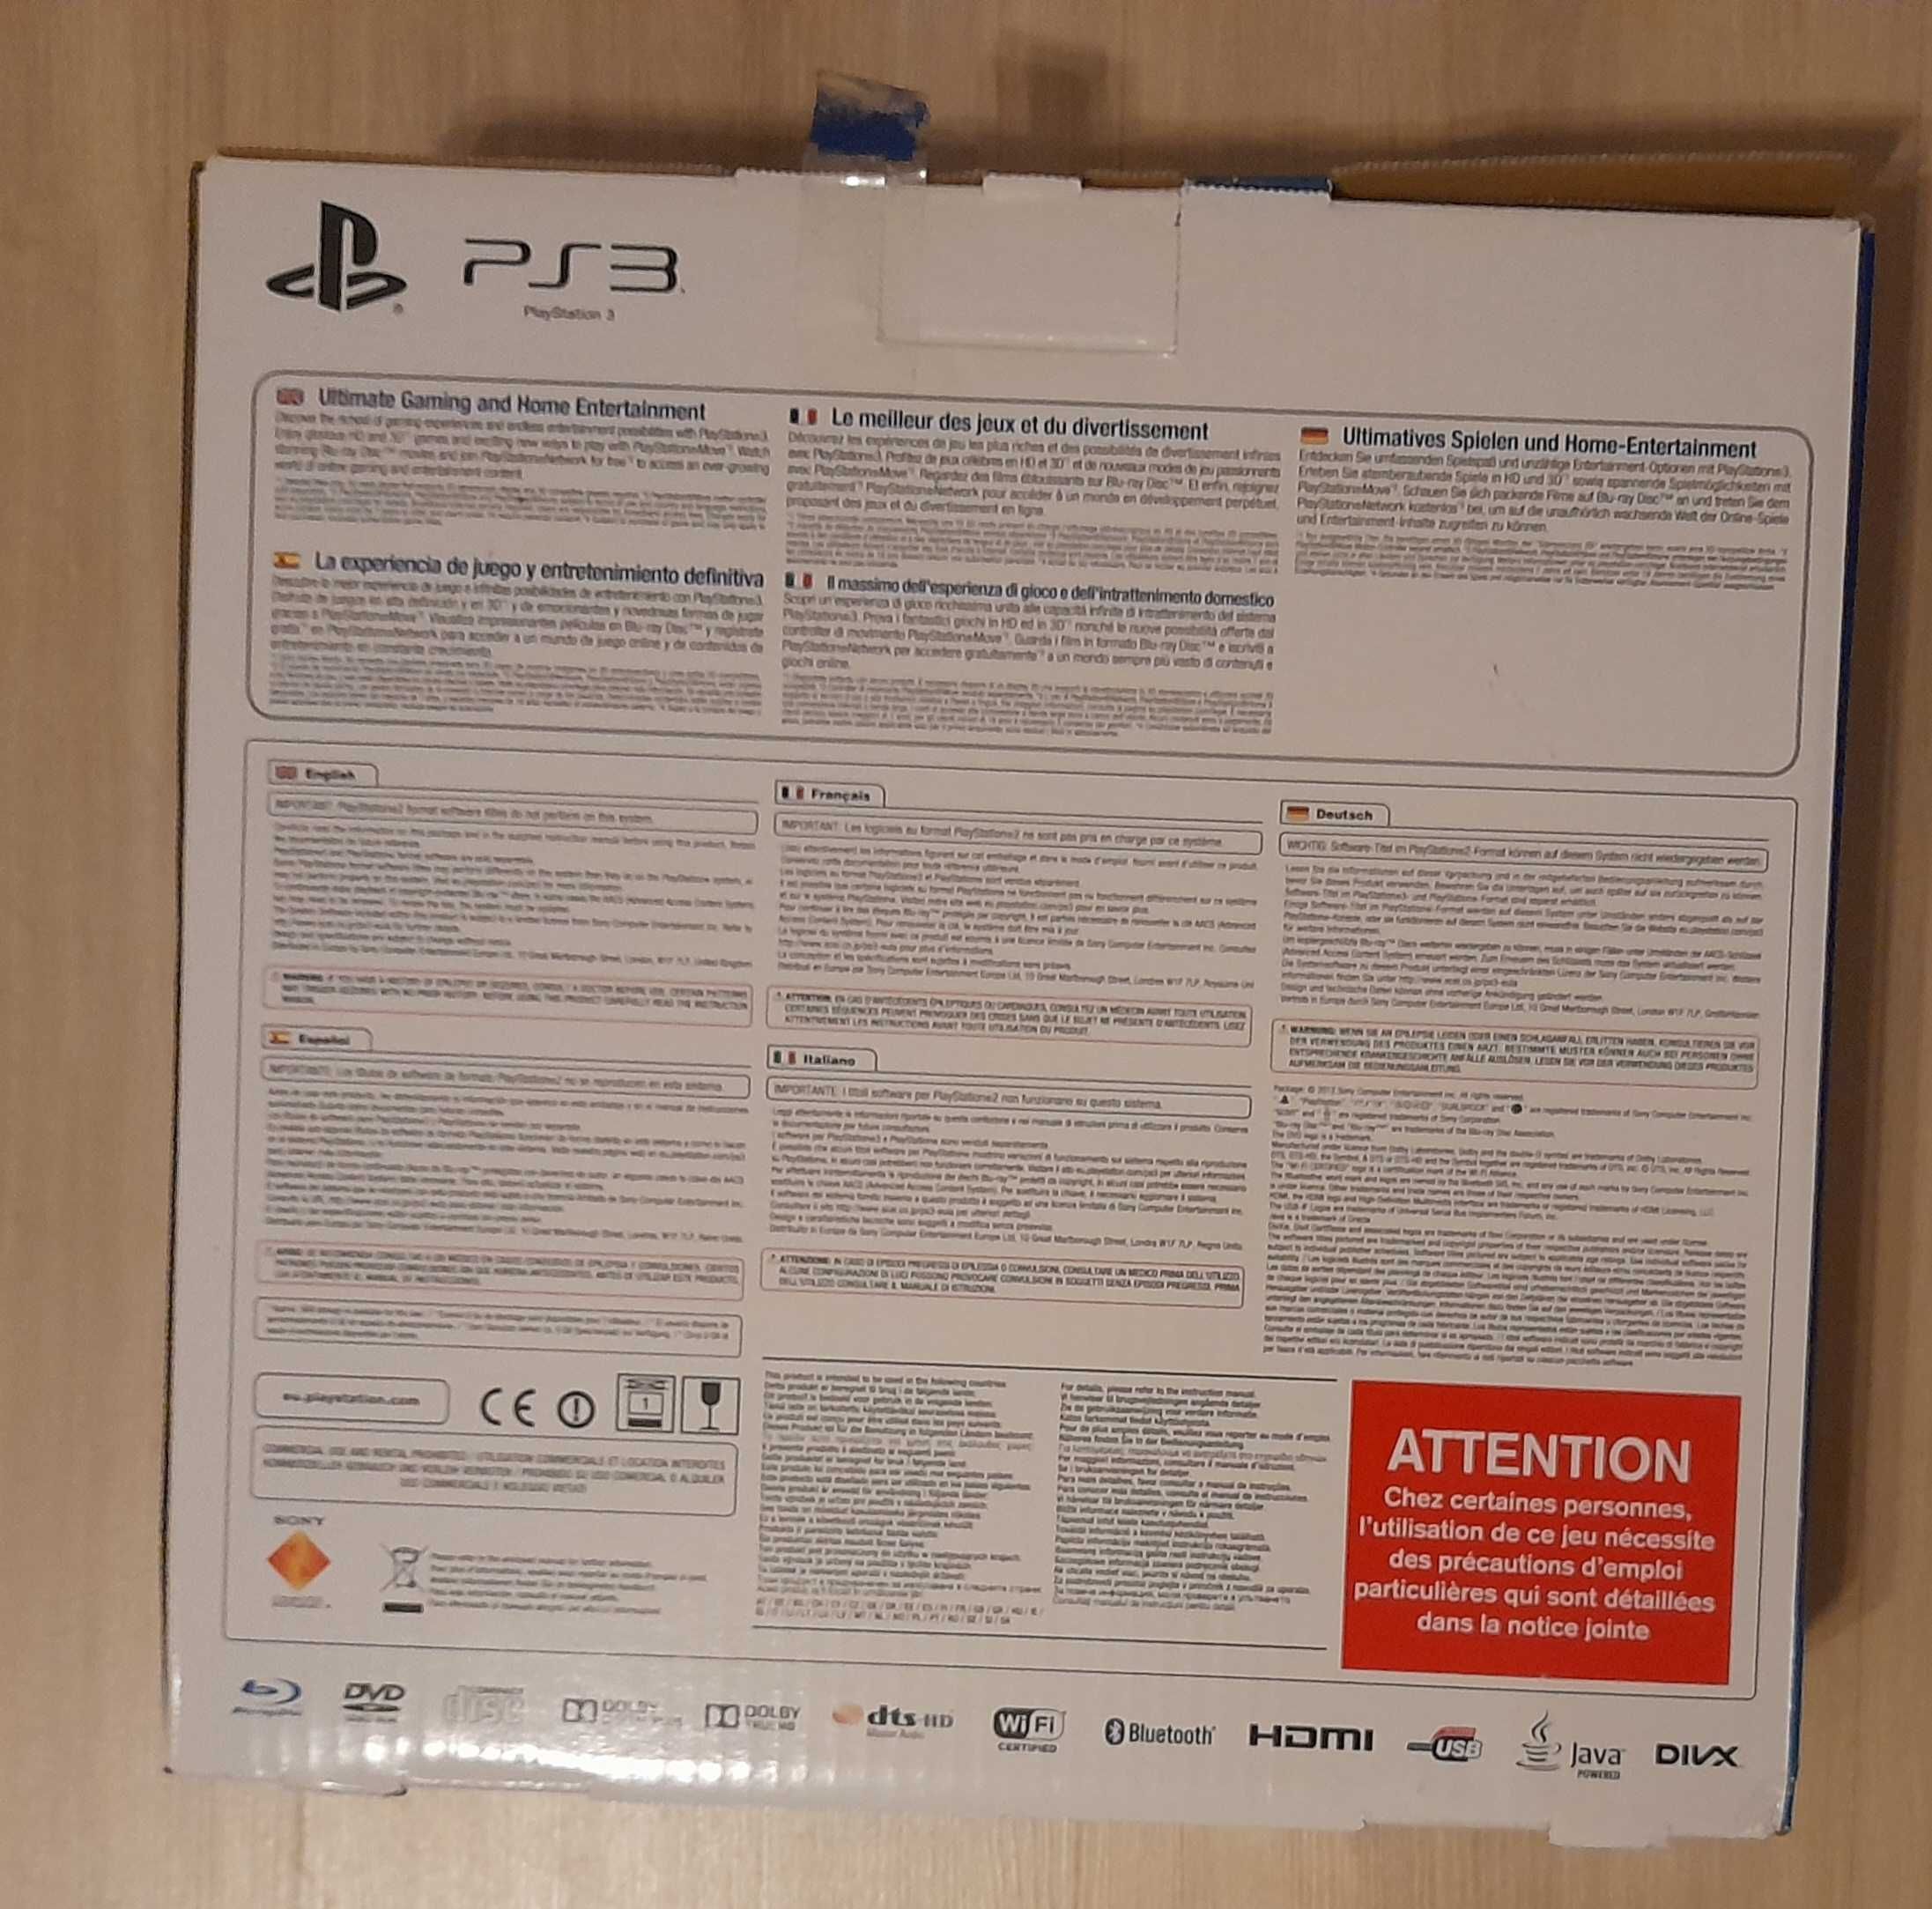 Nowa konsola Playstation 3 super slim. W oryginalnym opakowaniu.